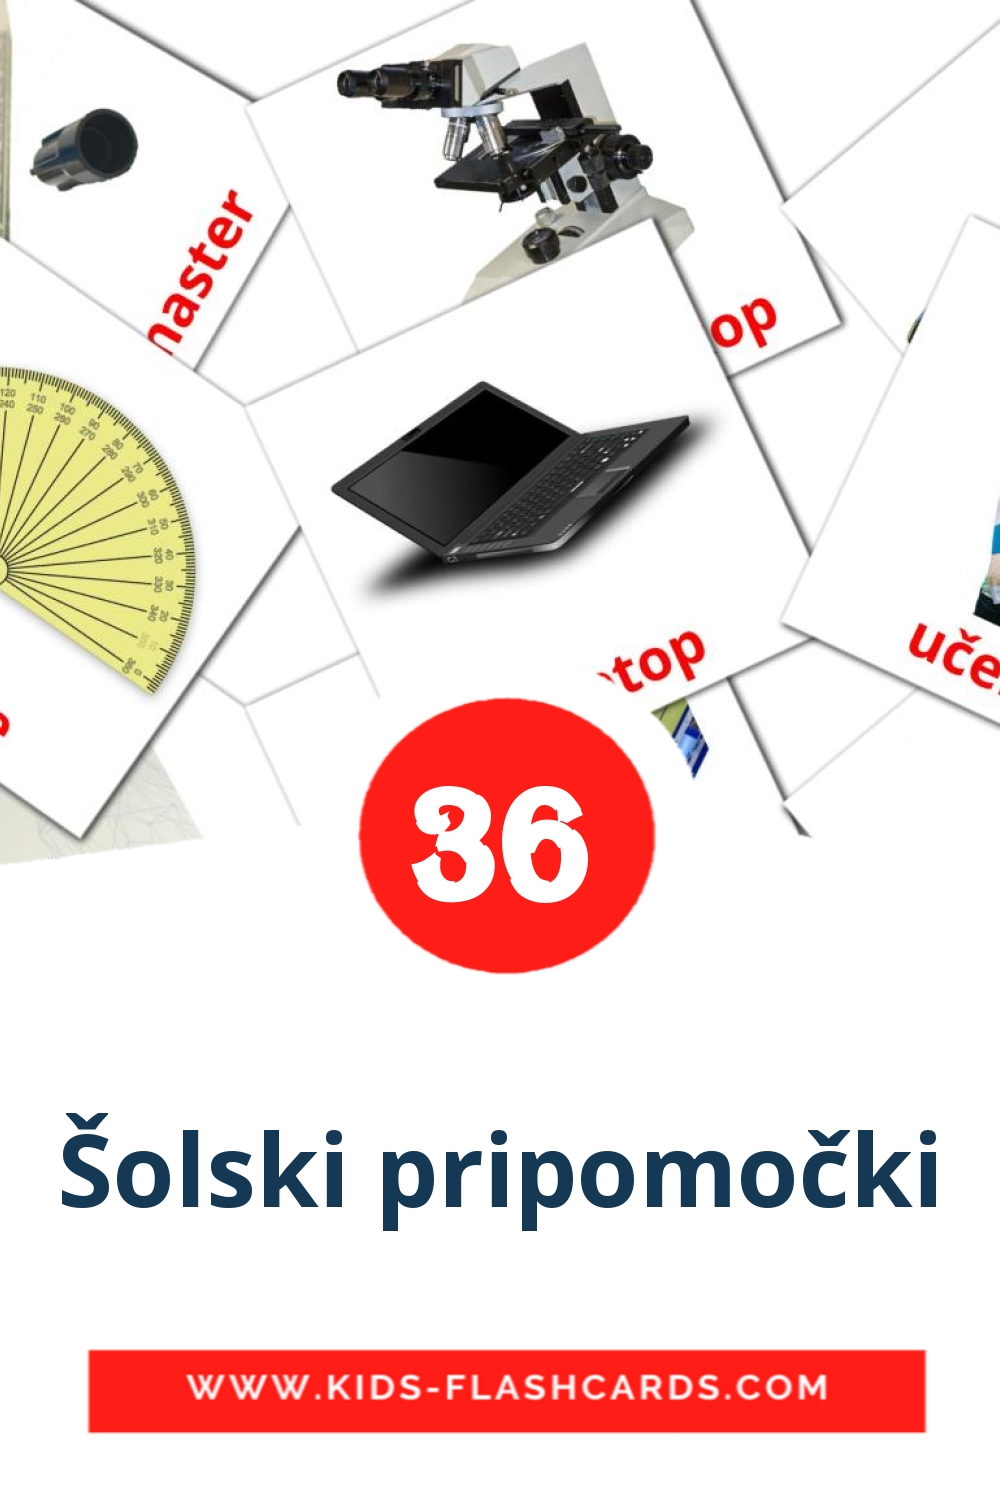 36 Šolski pripomočki Bildkarten für den Kindergarten auf Serbisch